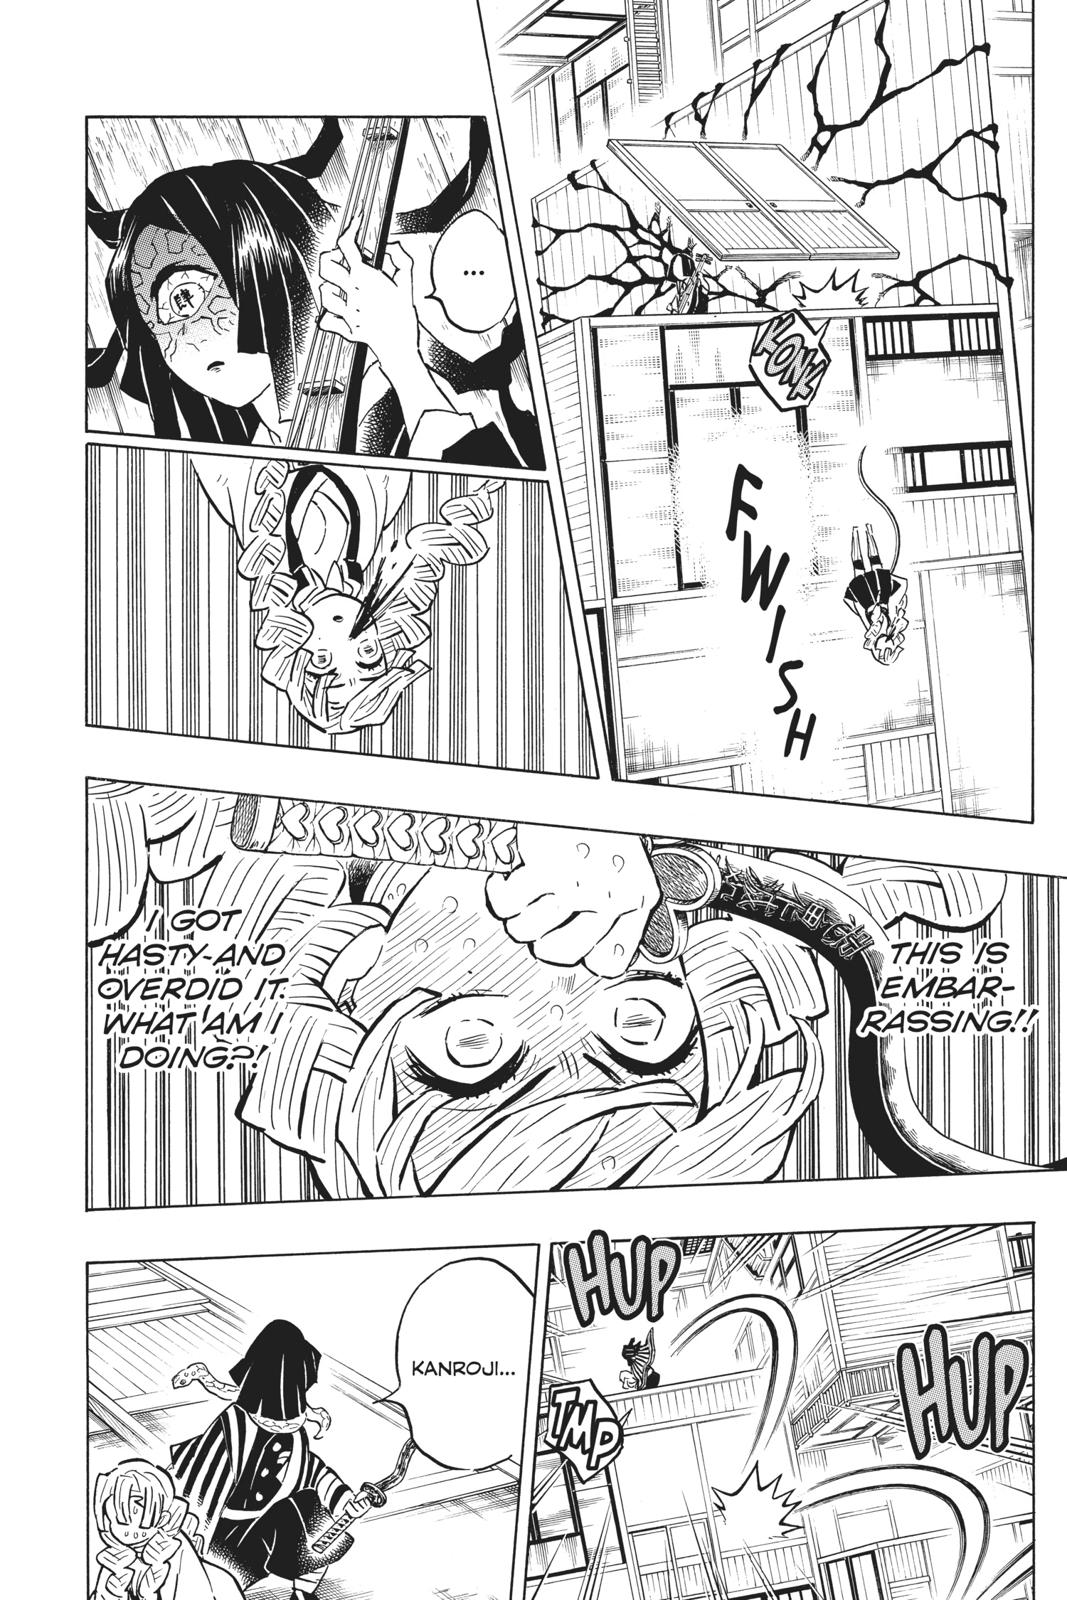 Demon Slayer Manga Manga Chapter - 164 - image 5